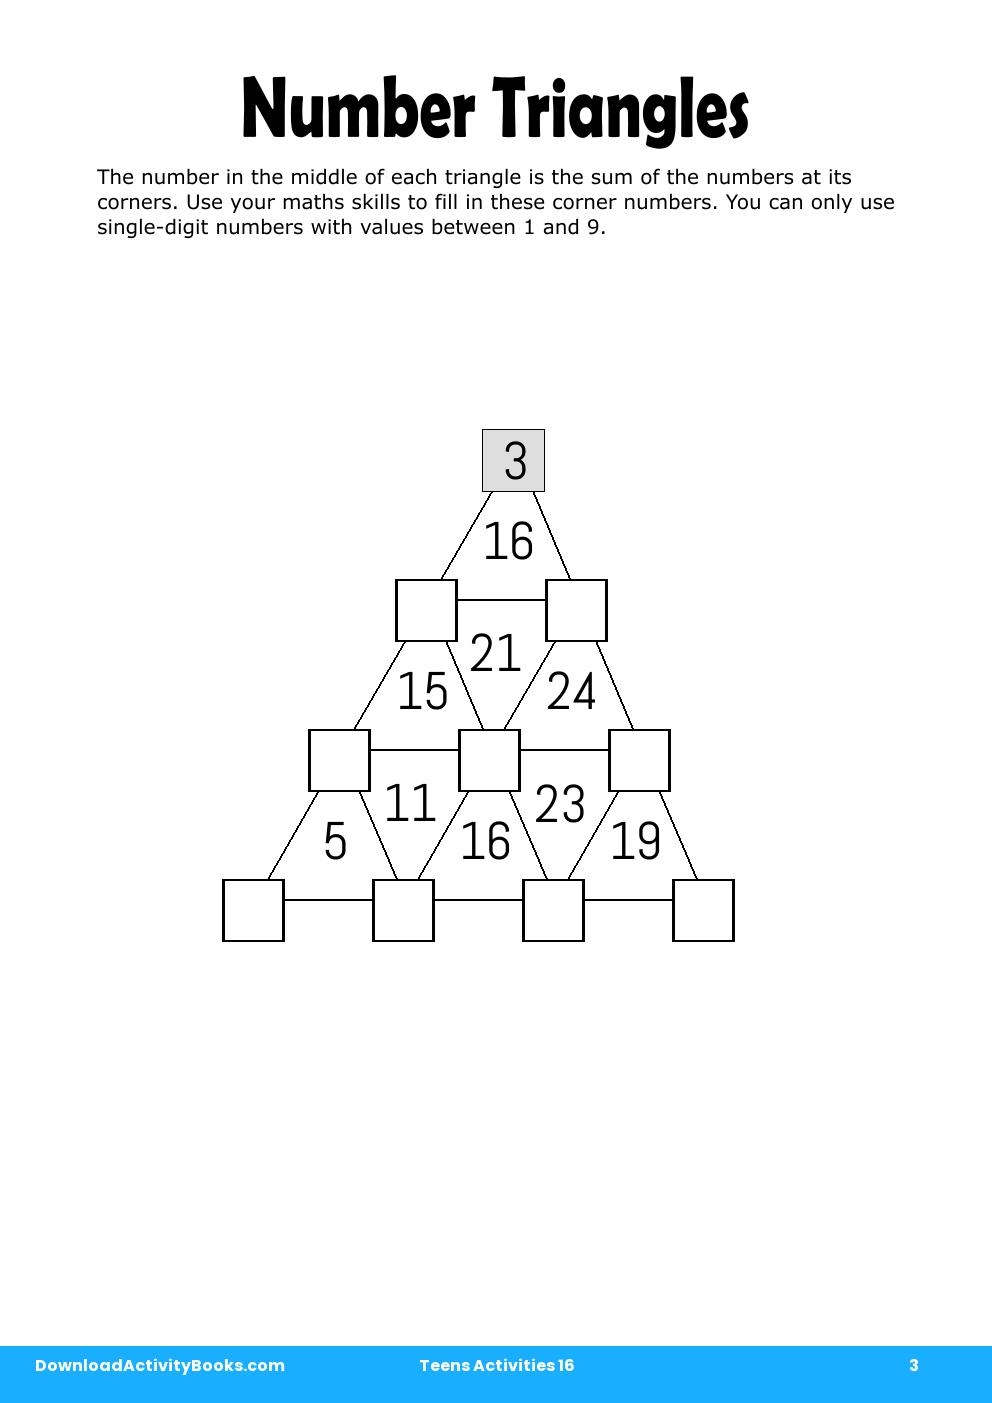 Number Triangles in Teens Activities 16